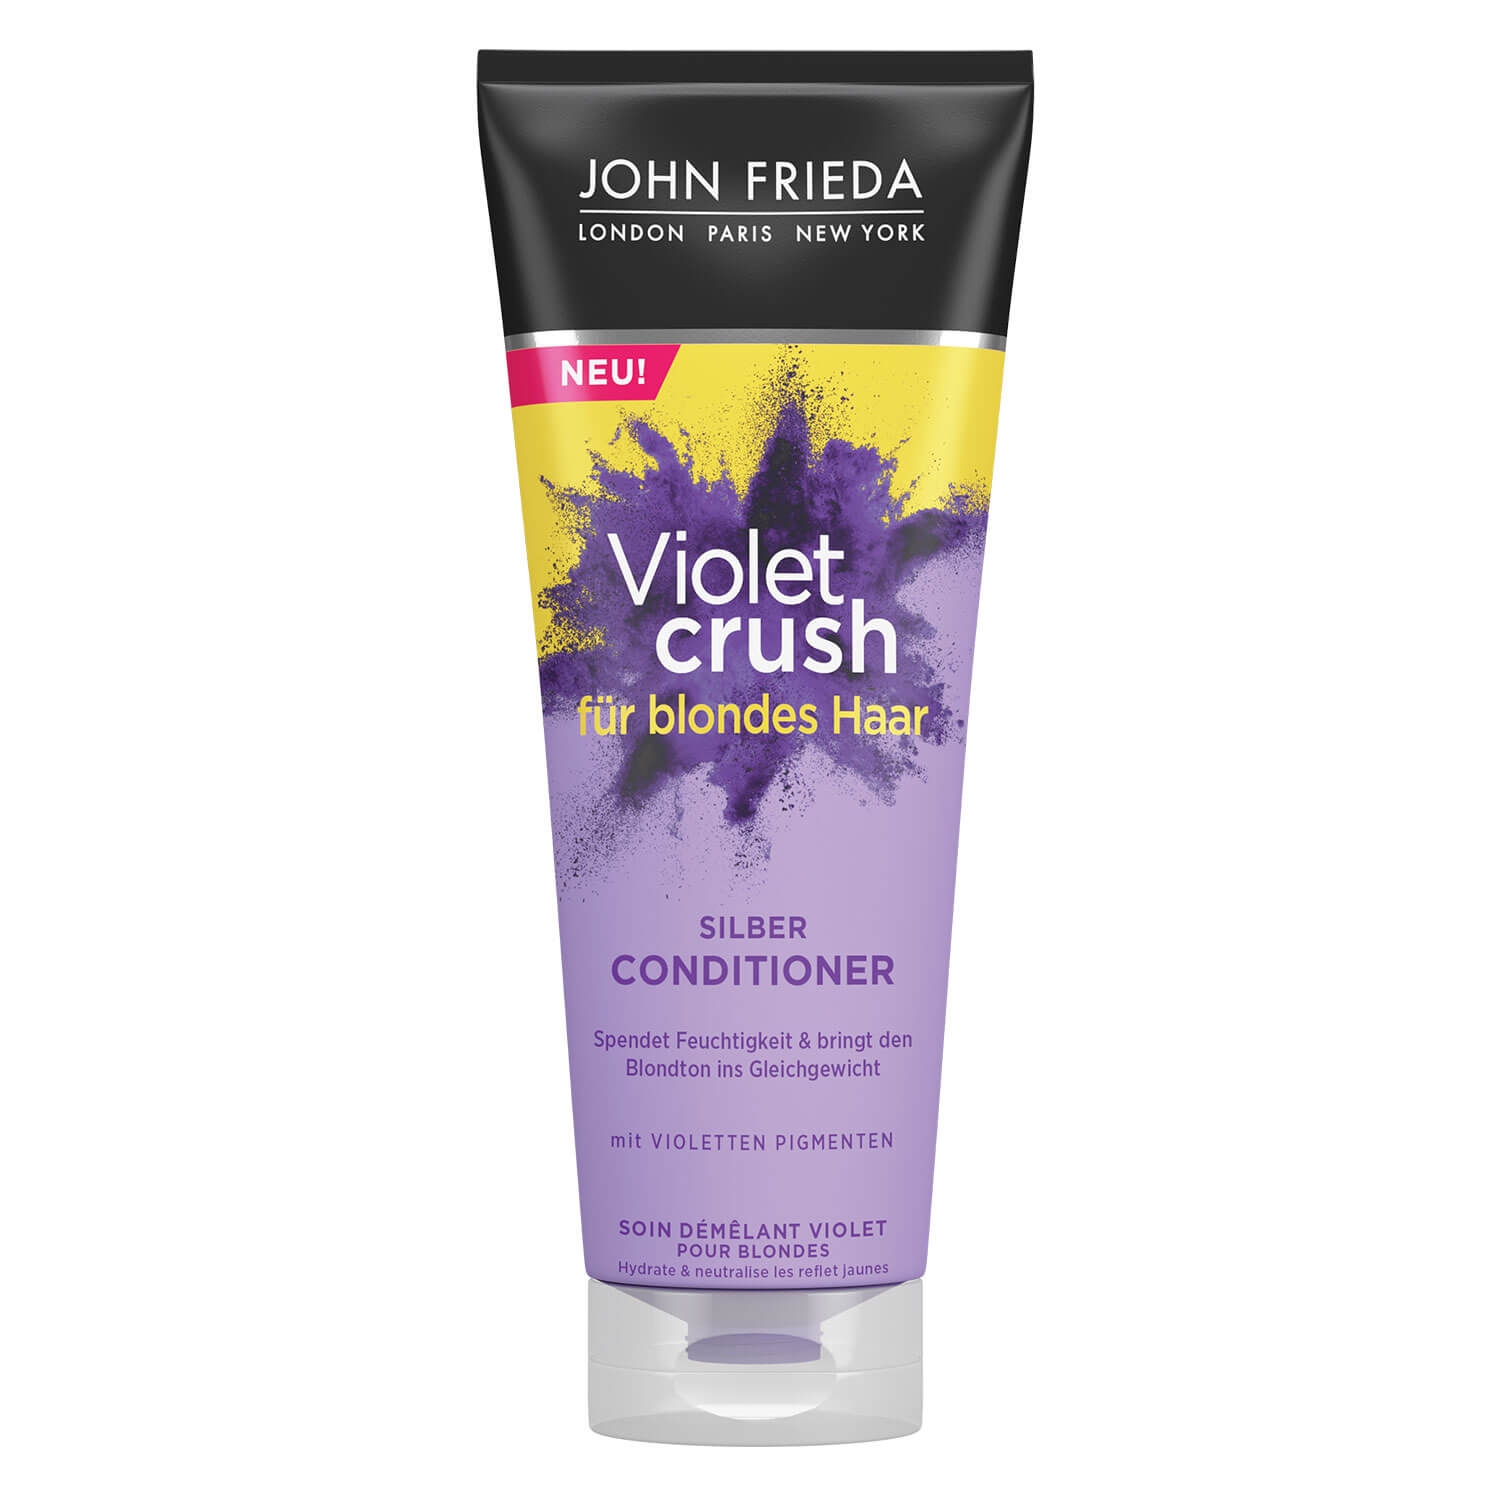 Produktbild von Sheer Blonde - Violet Crush Silber Conditioner